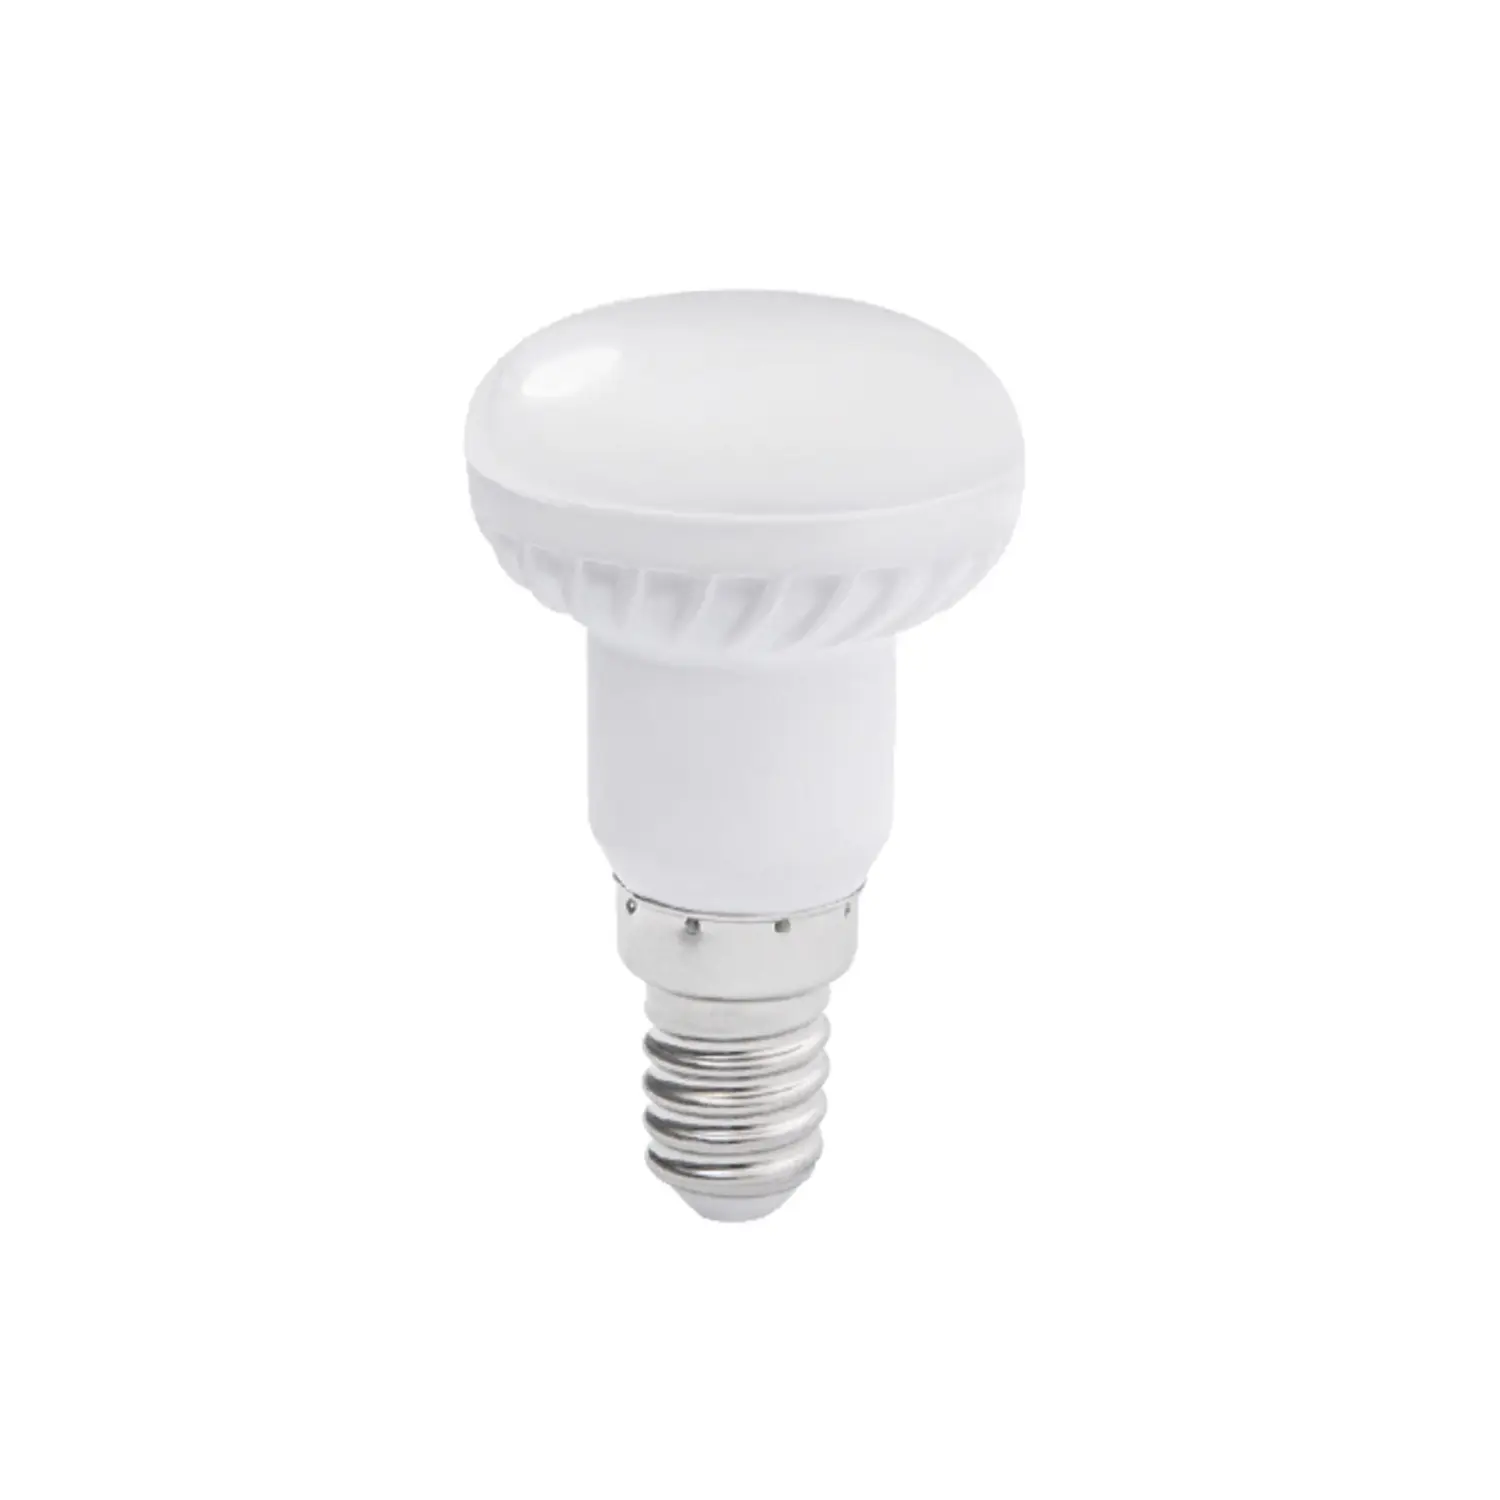 immagine del prodotto lampadina led R39 spot porta faretto e14 3 watt bianco caldo